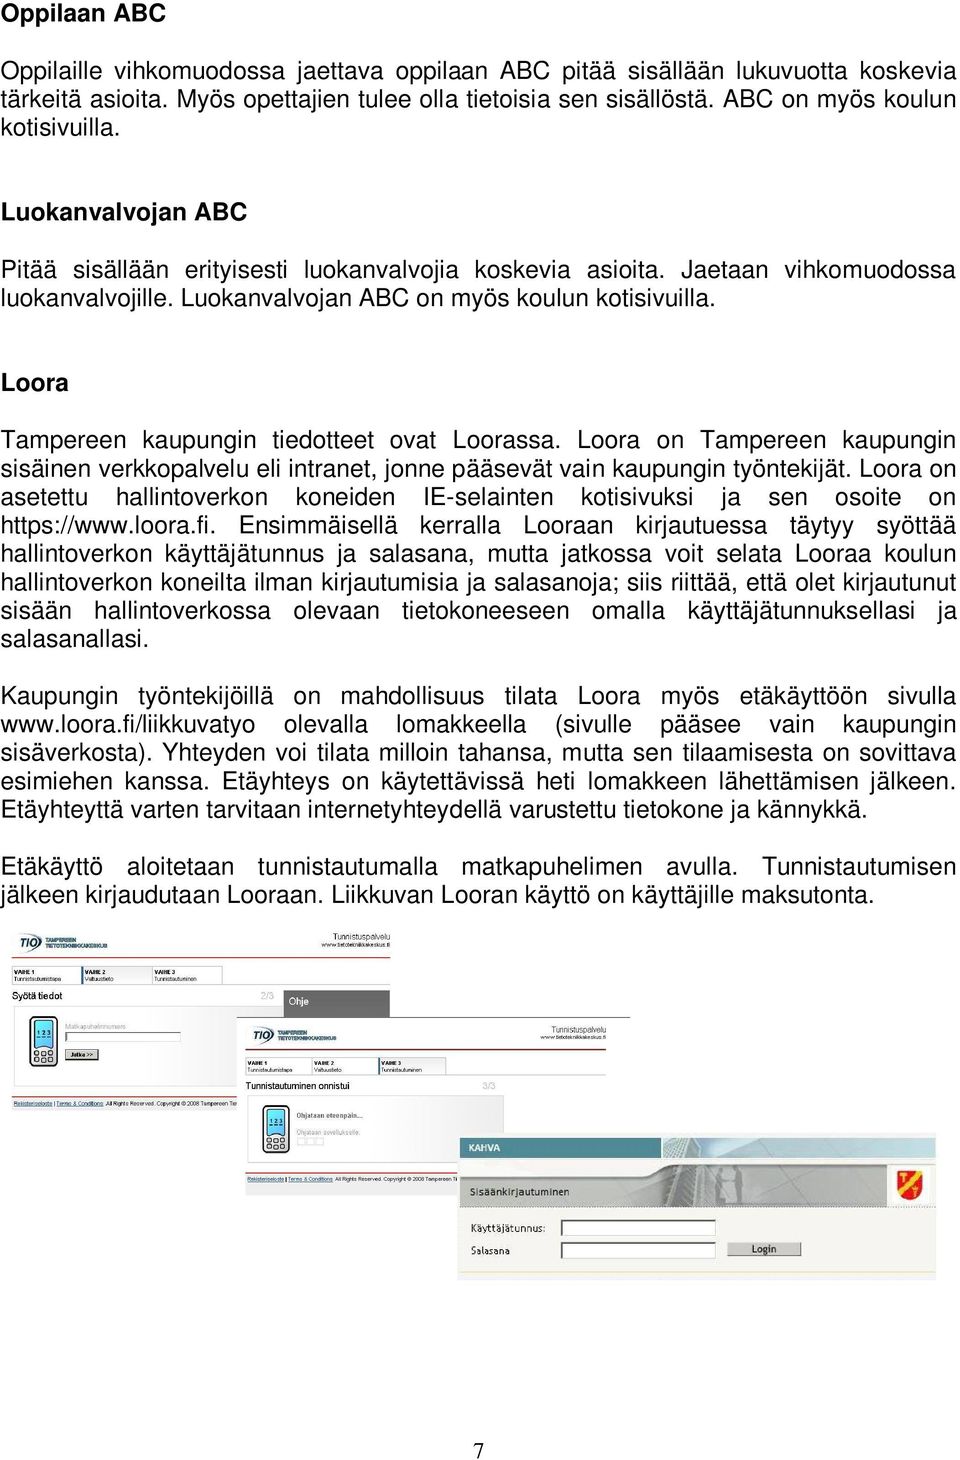 Loora Tampereen kaupungin tiedotteet ovat Loorassa. Loora on Tampereen kaupungin sisäinen verkkopalvelu eli intranet, jonne pääsevät vain kaupungin työntekijät.